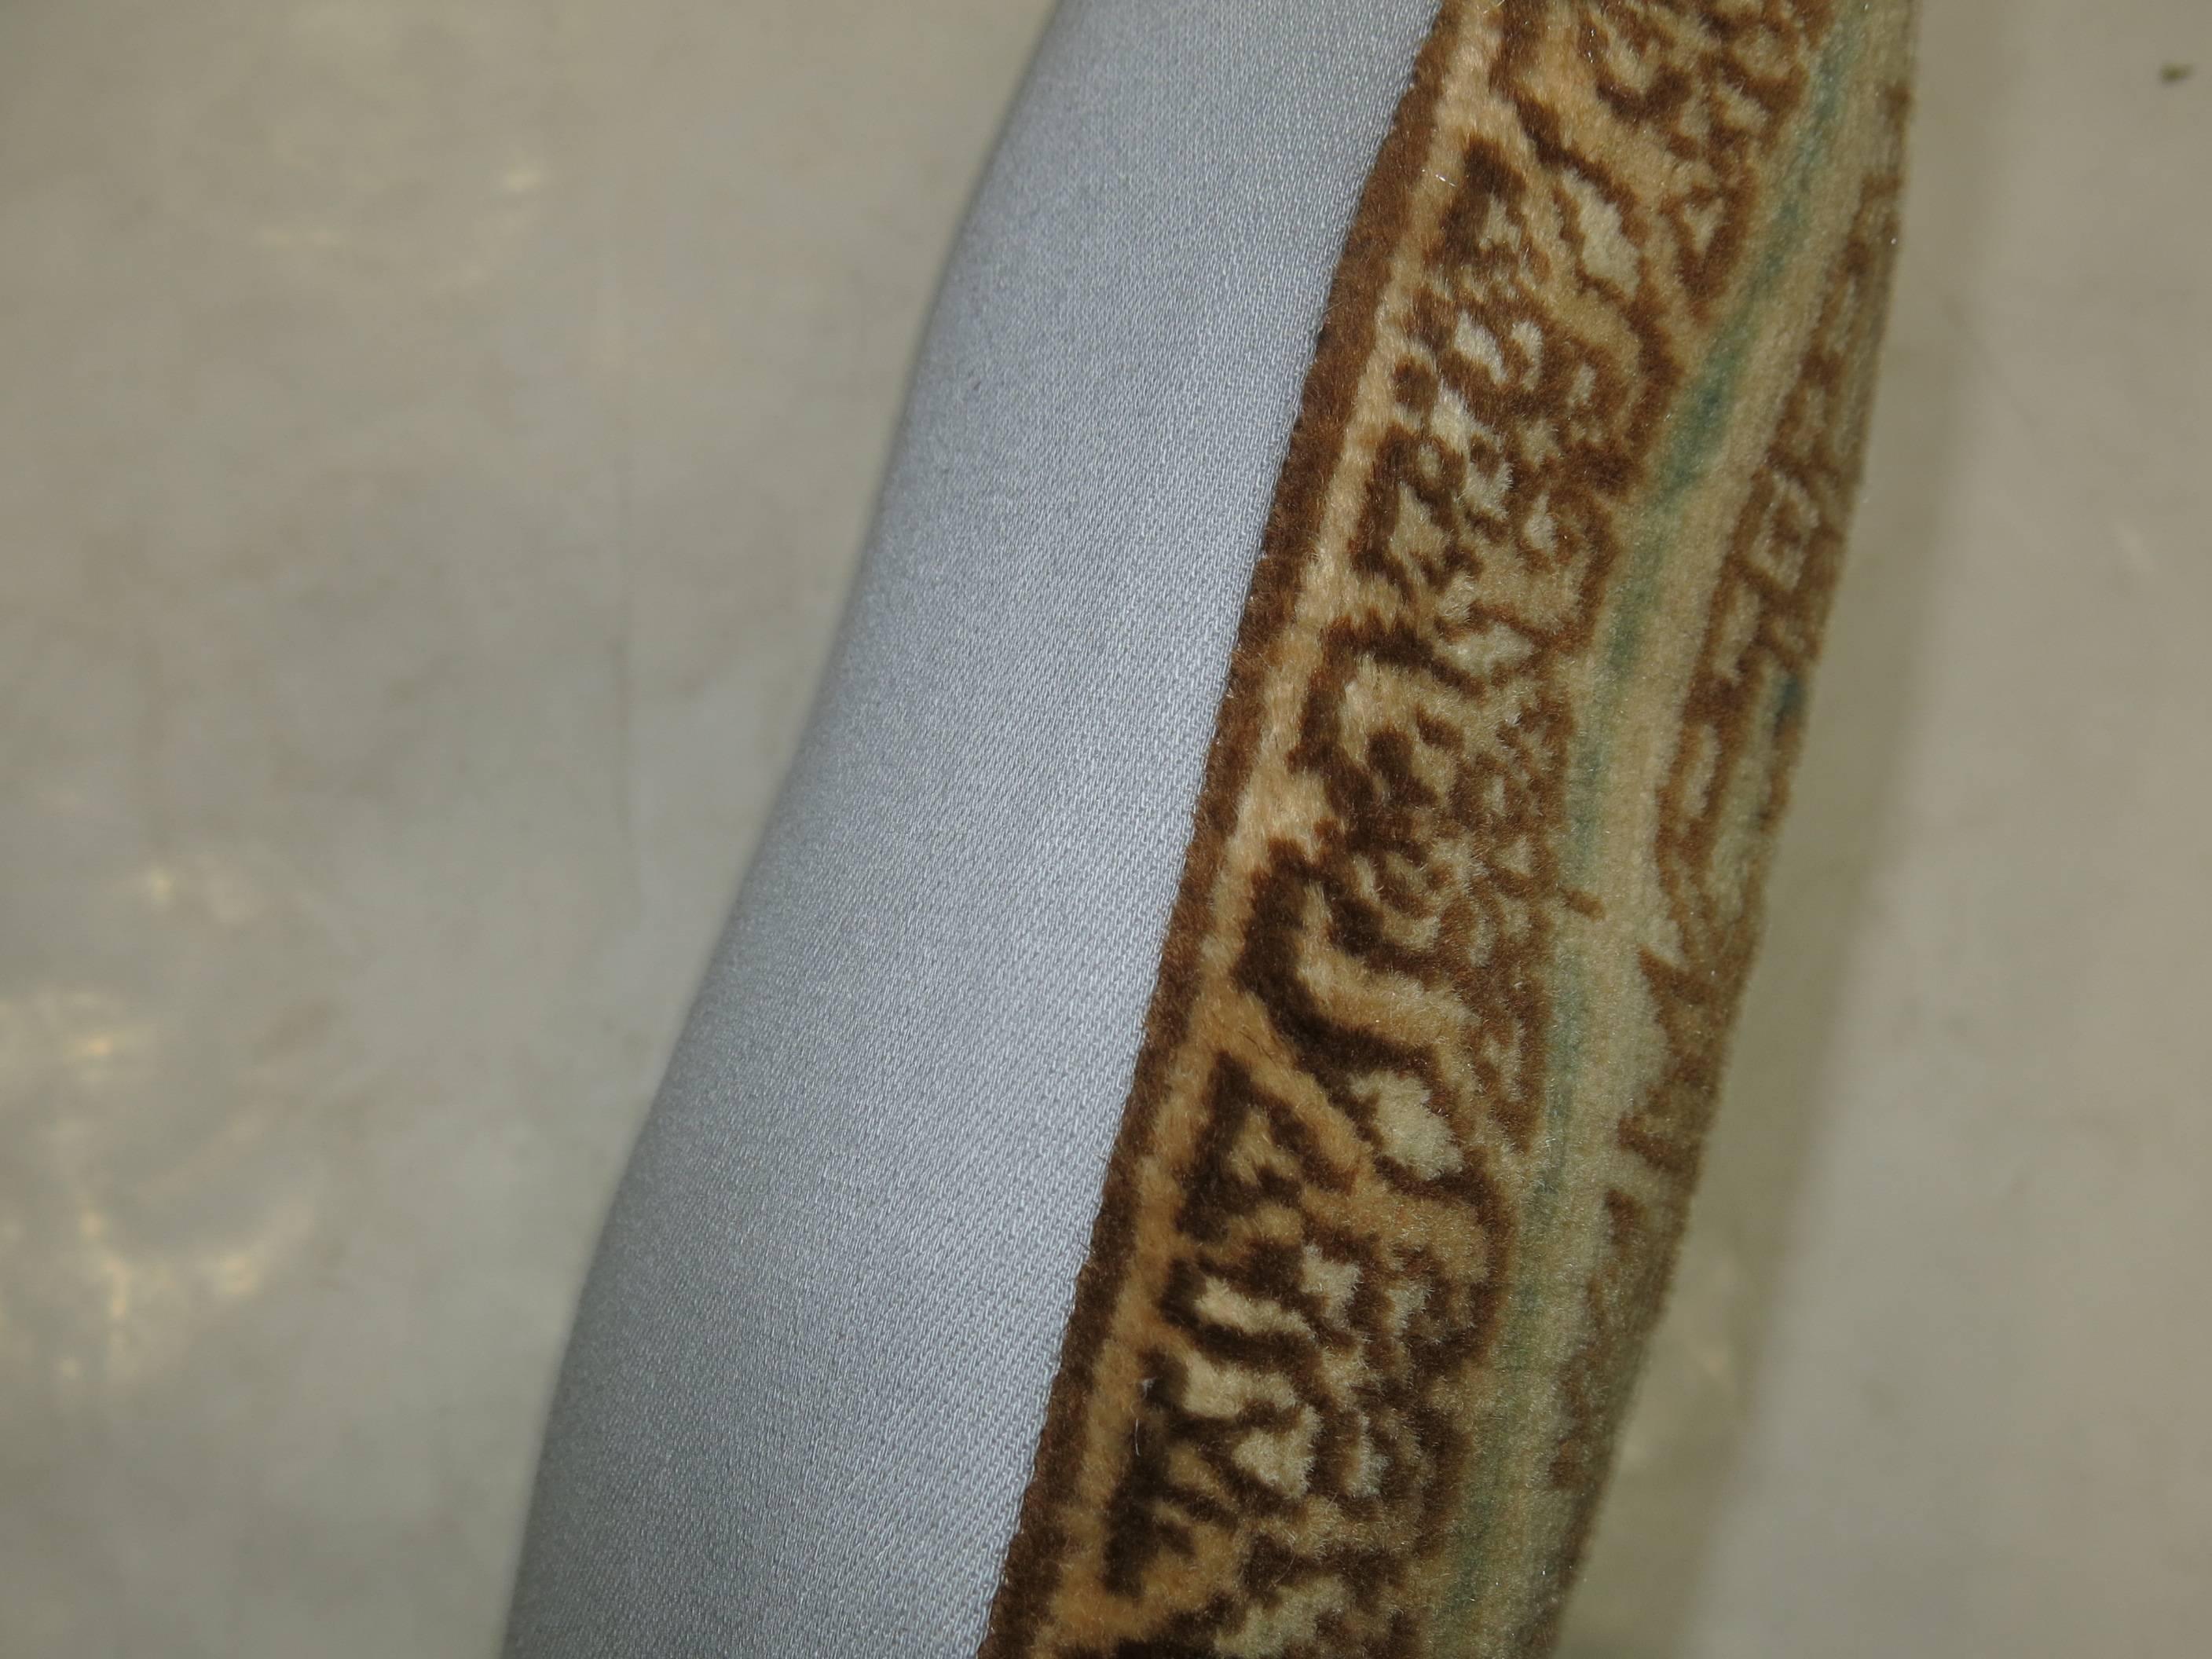 Kissen aus einem alten persischen Heriz-Teppich.

17'' x 18''